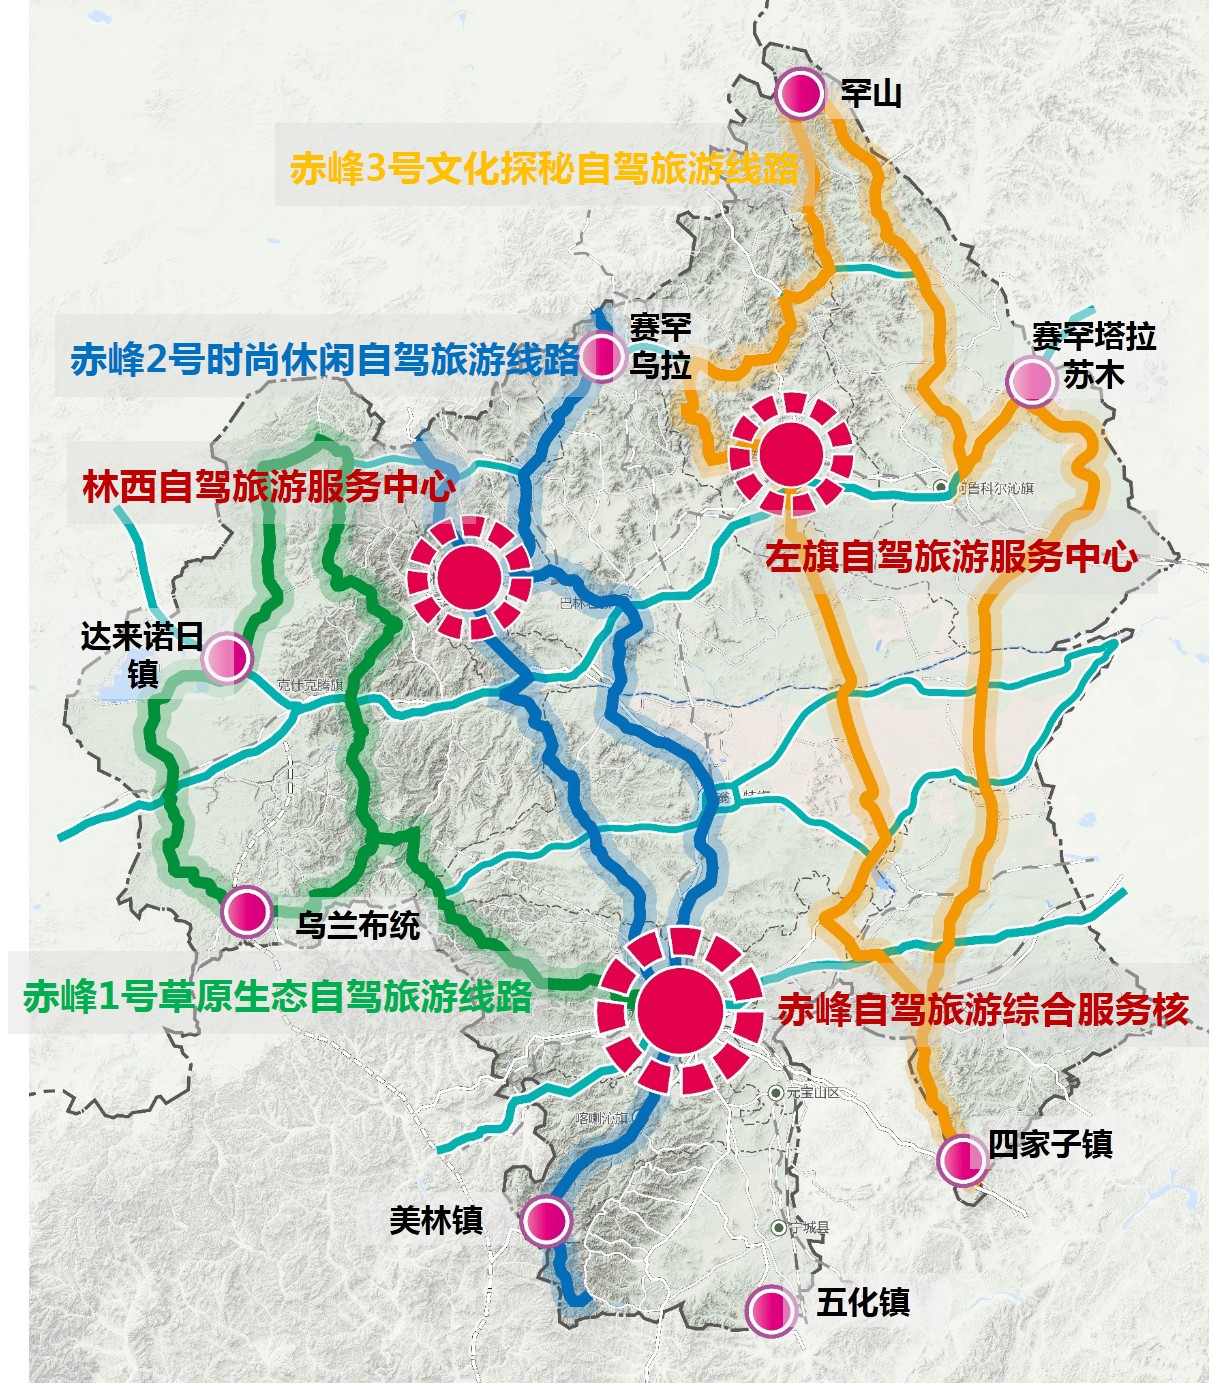 赤峰市自驾游公共服务体系布局专项规划